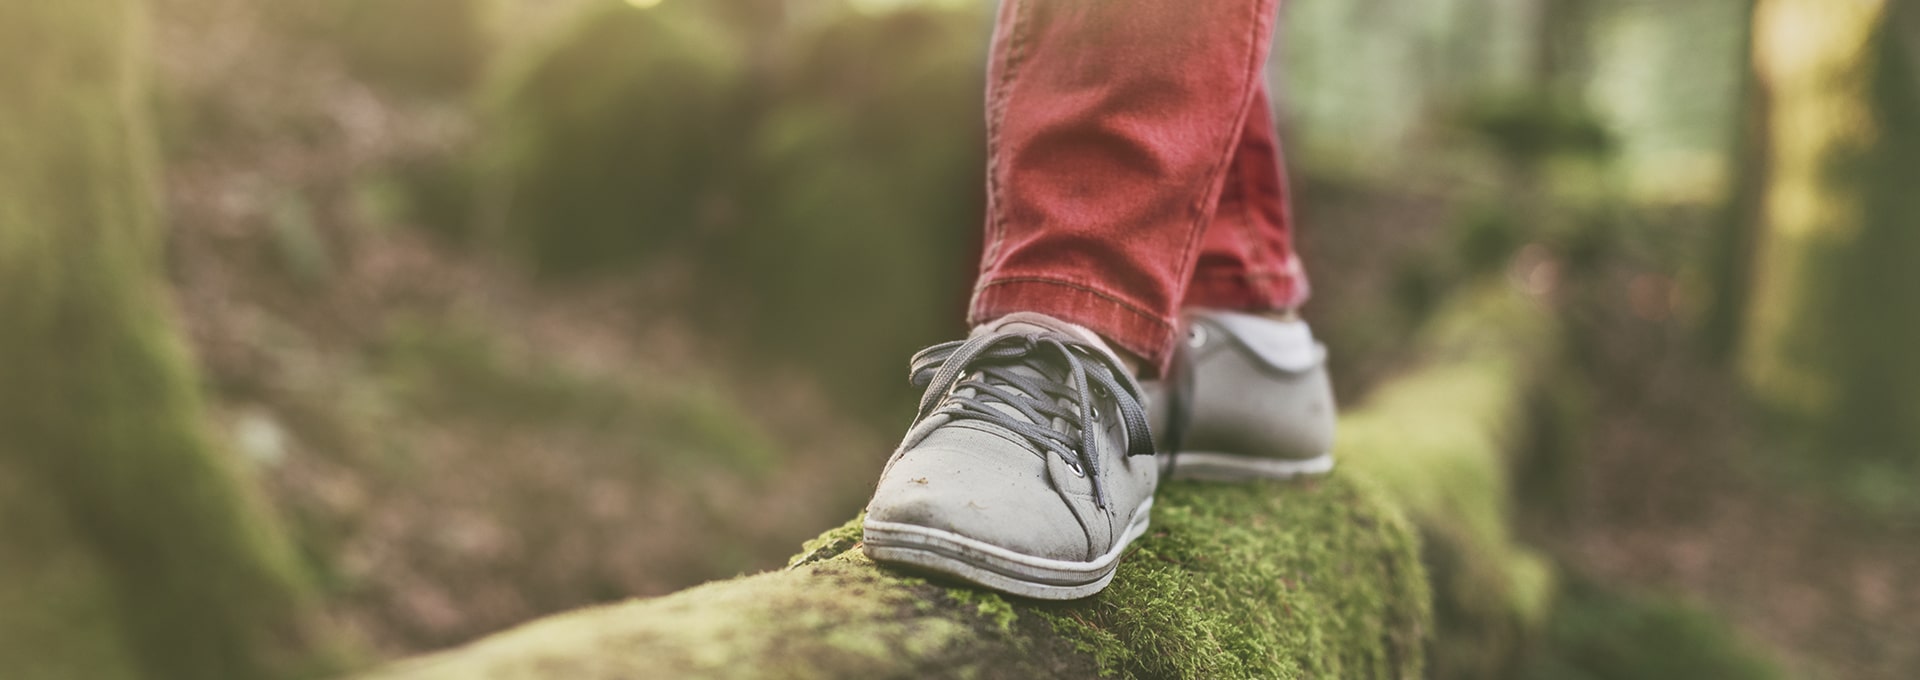 Stopy w szarych butach, balansujące na drewnianej kłodzie w lesie